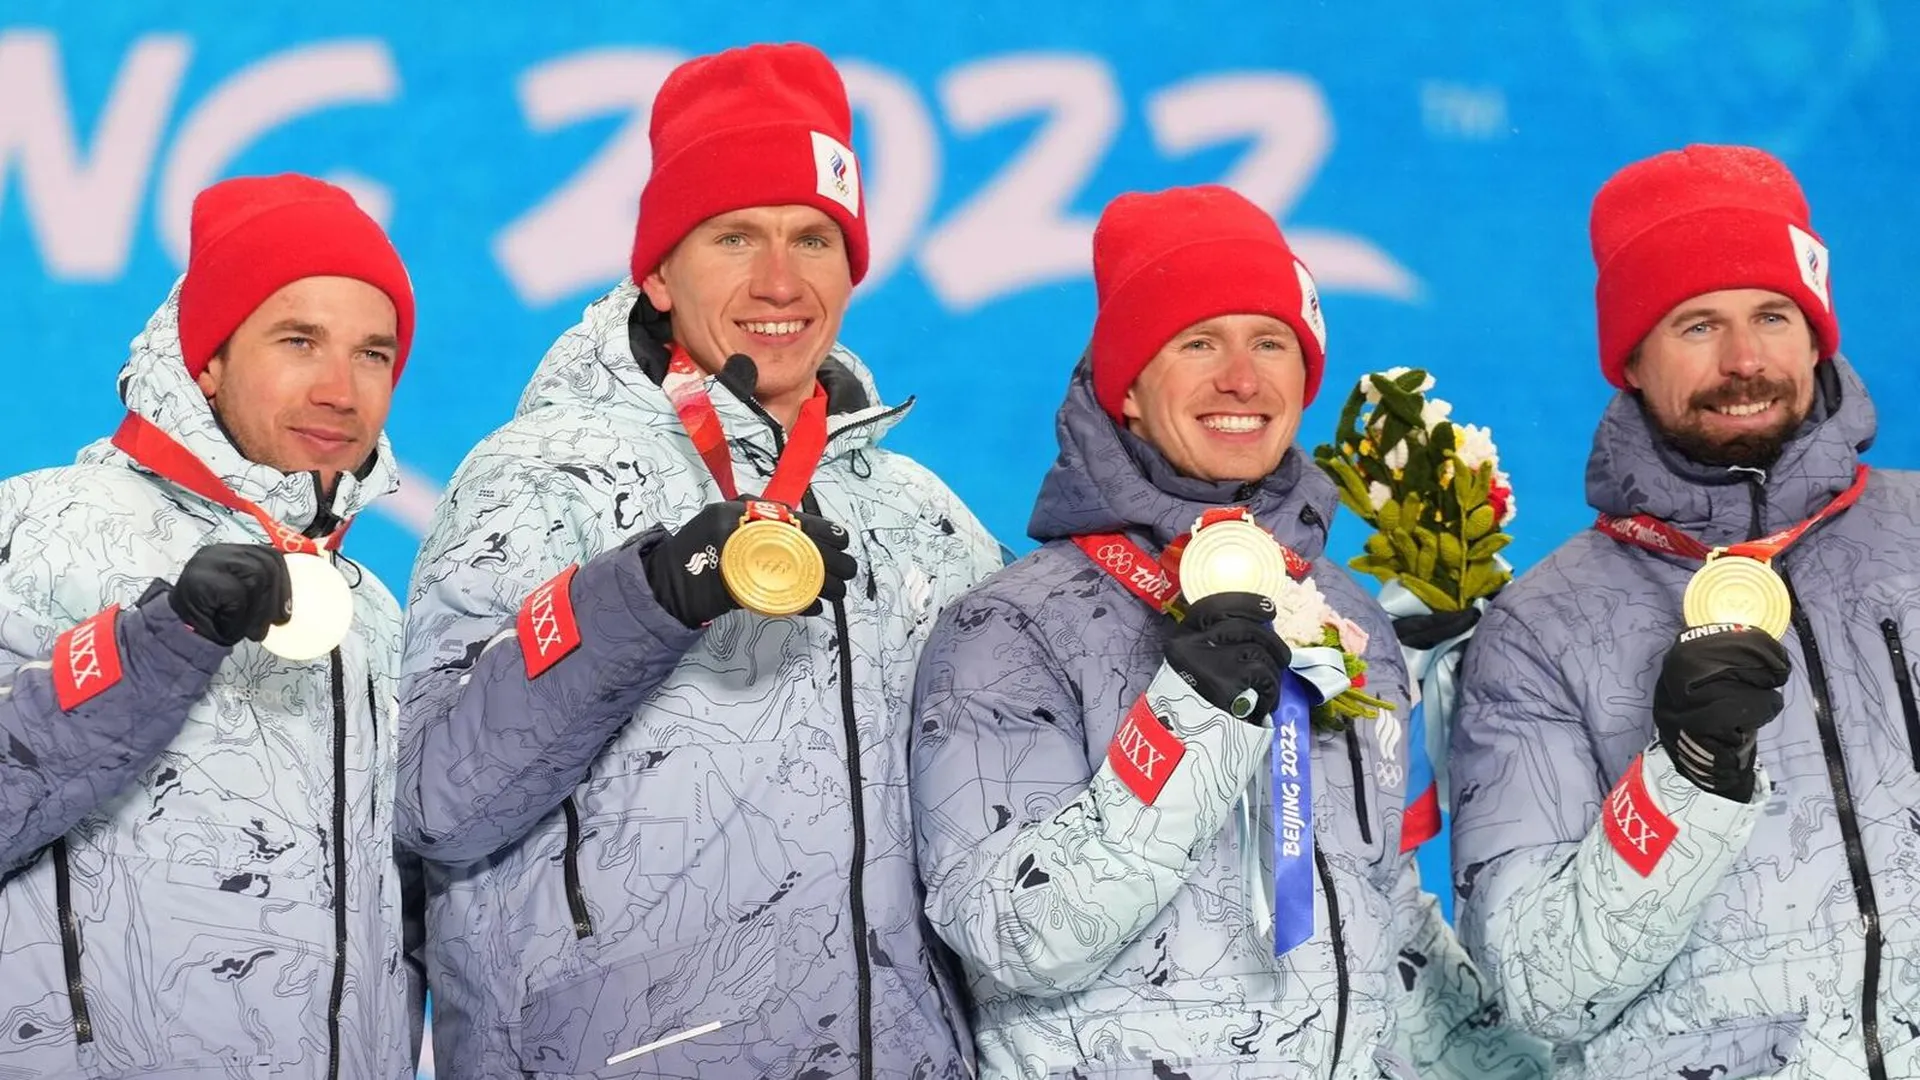 Лыжники сборной России на церемонии награждения на Олимпийских играх 2022 года в КНР